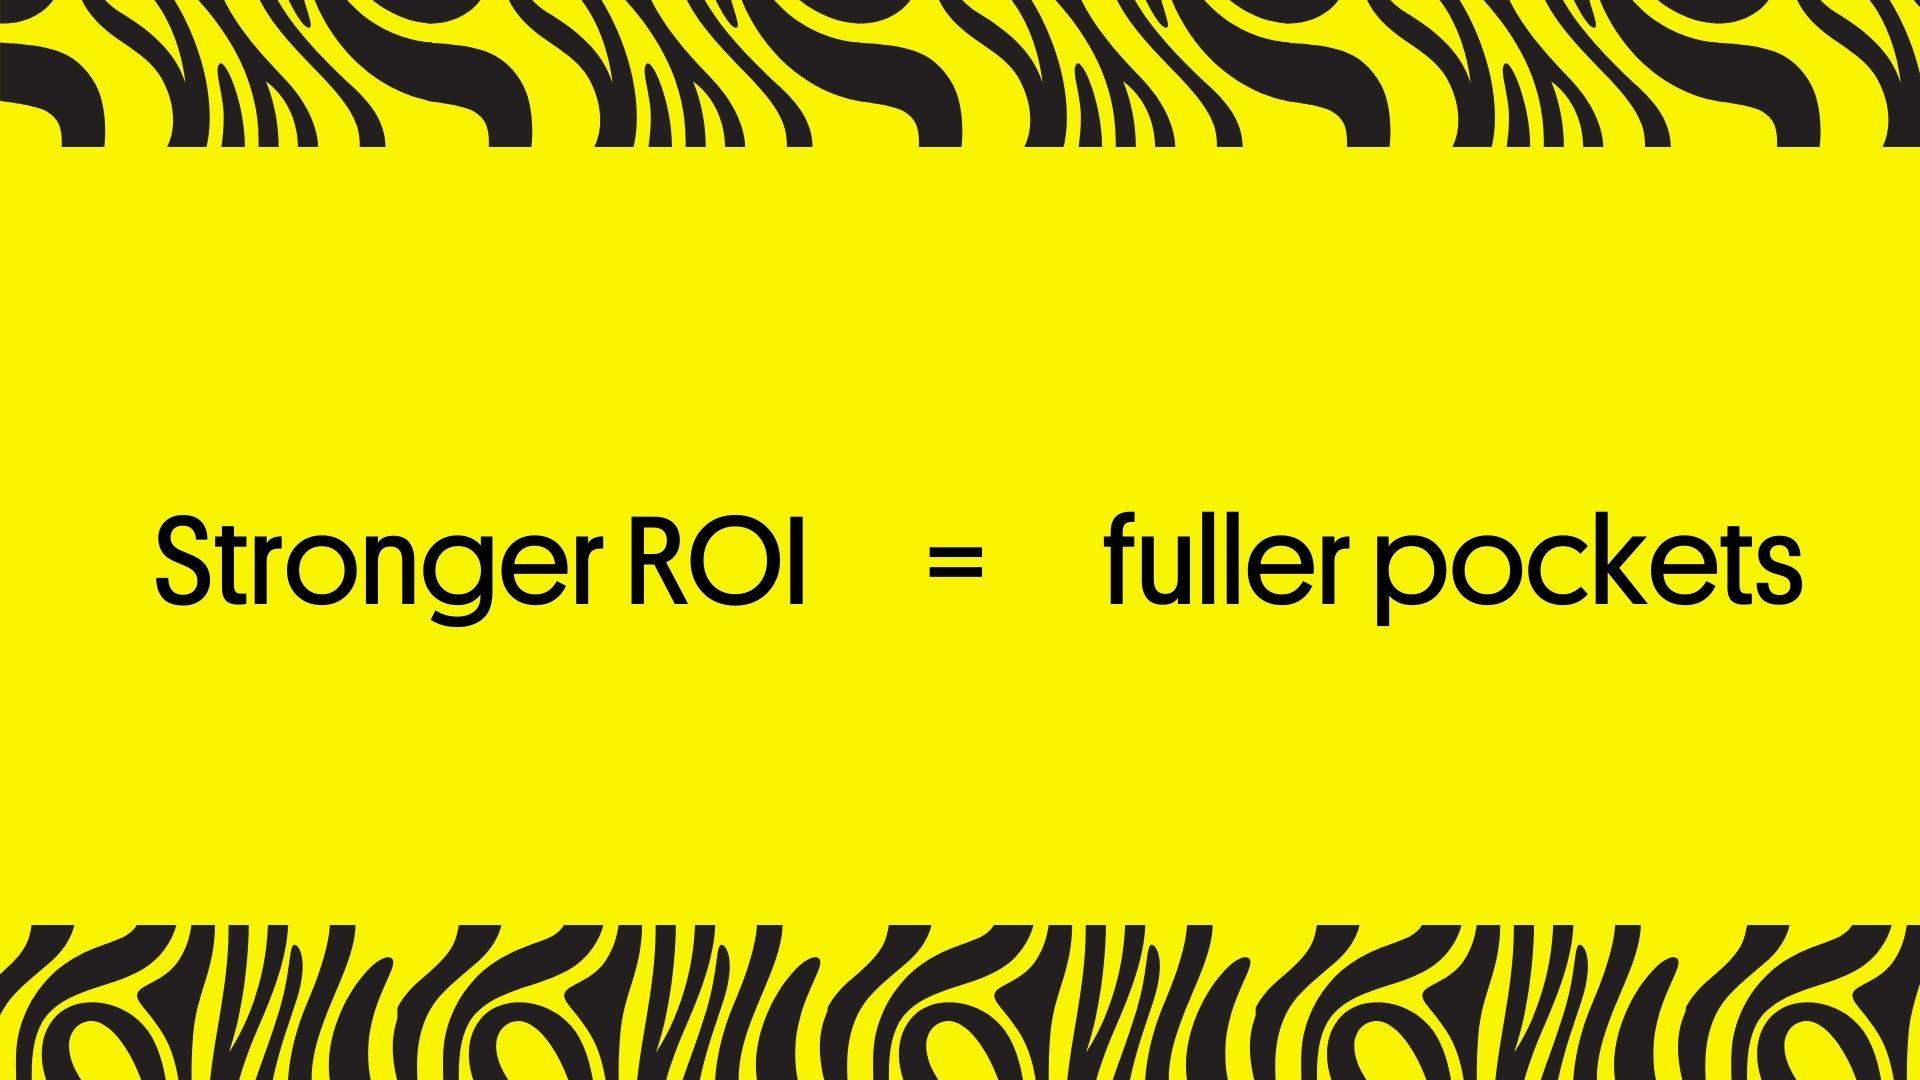 Stronger ROI = fuller pockets